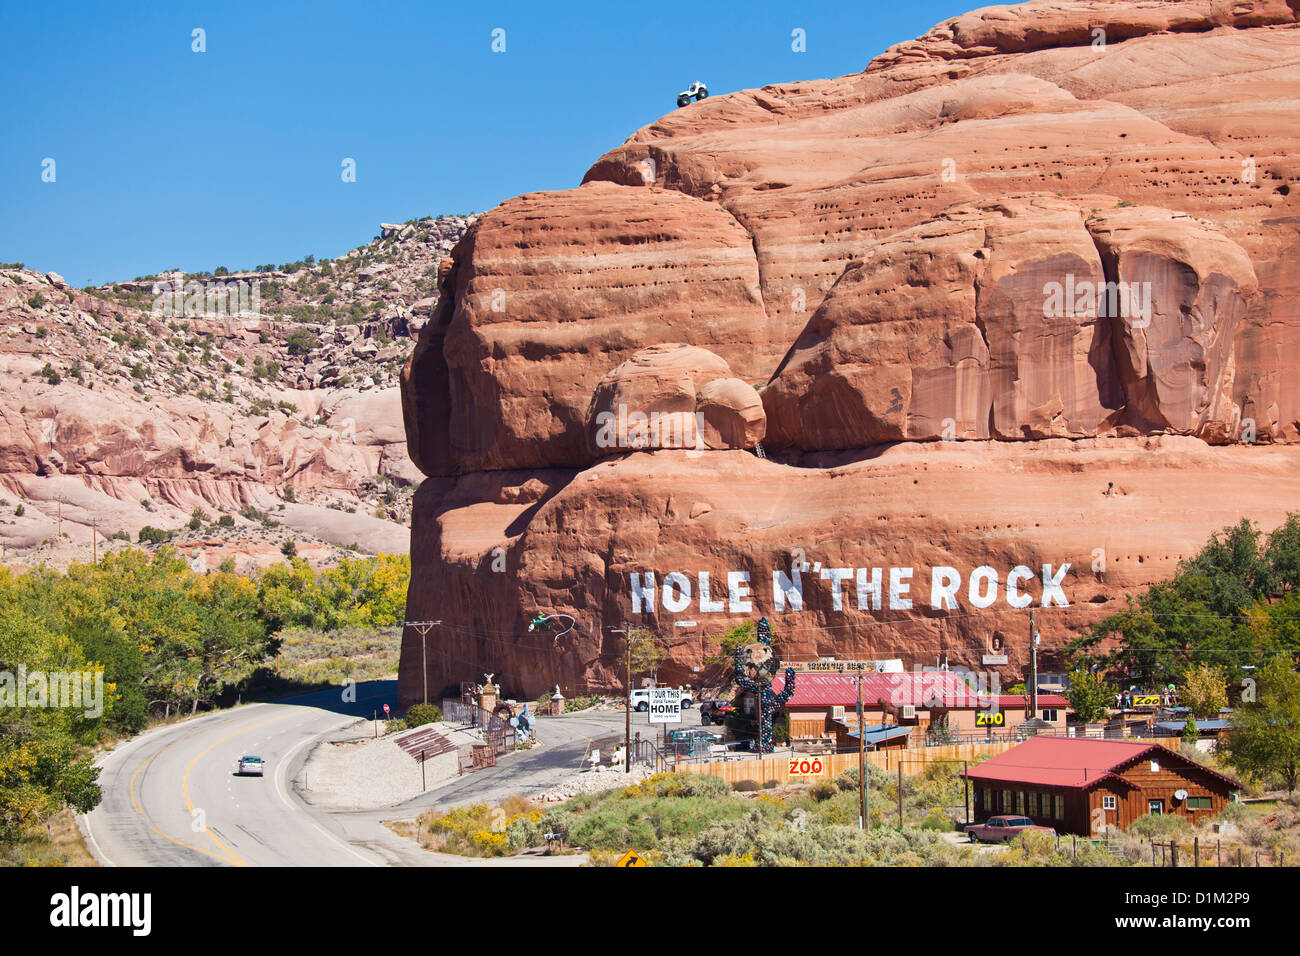 Trou n' le rock americana attraction touristique en bordure de la boutique de souvenirs en dehors de Moab Utah United States of America USA US Banque D'Images